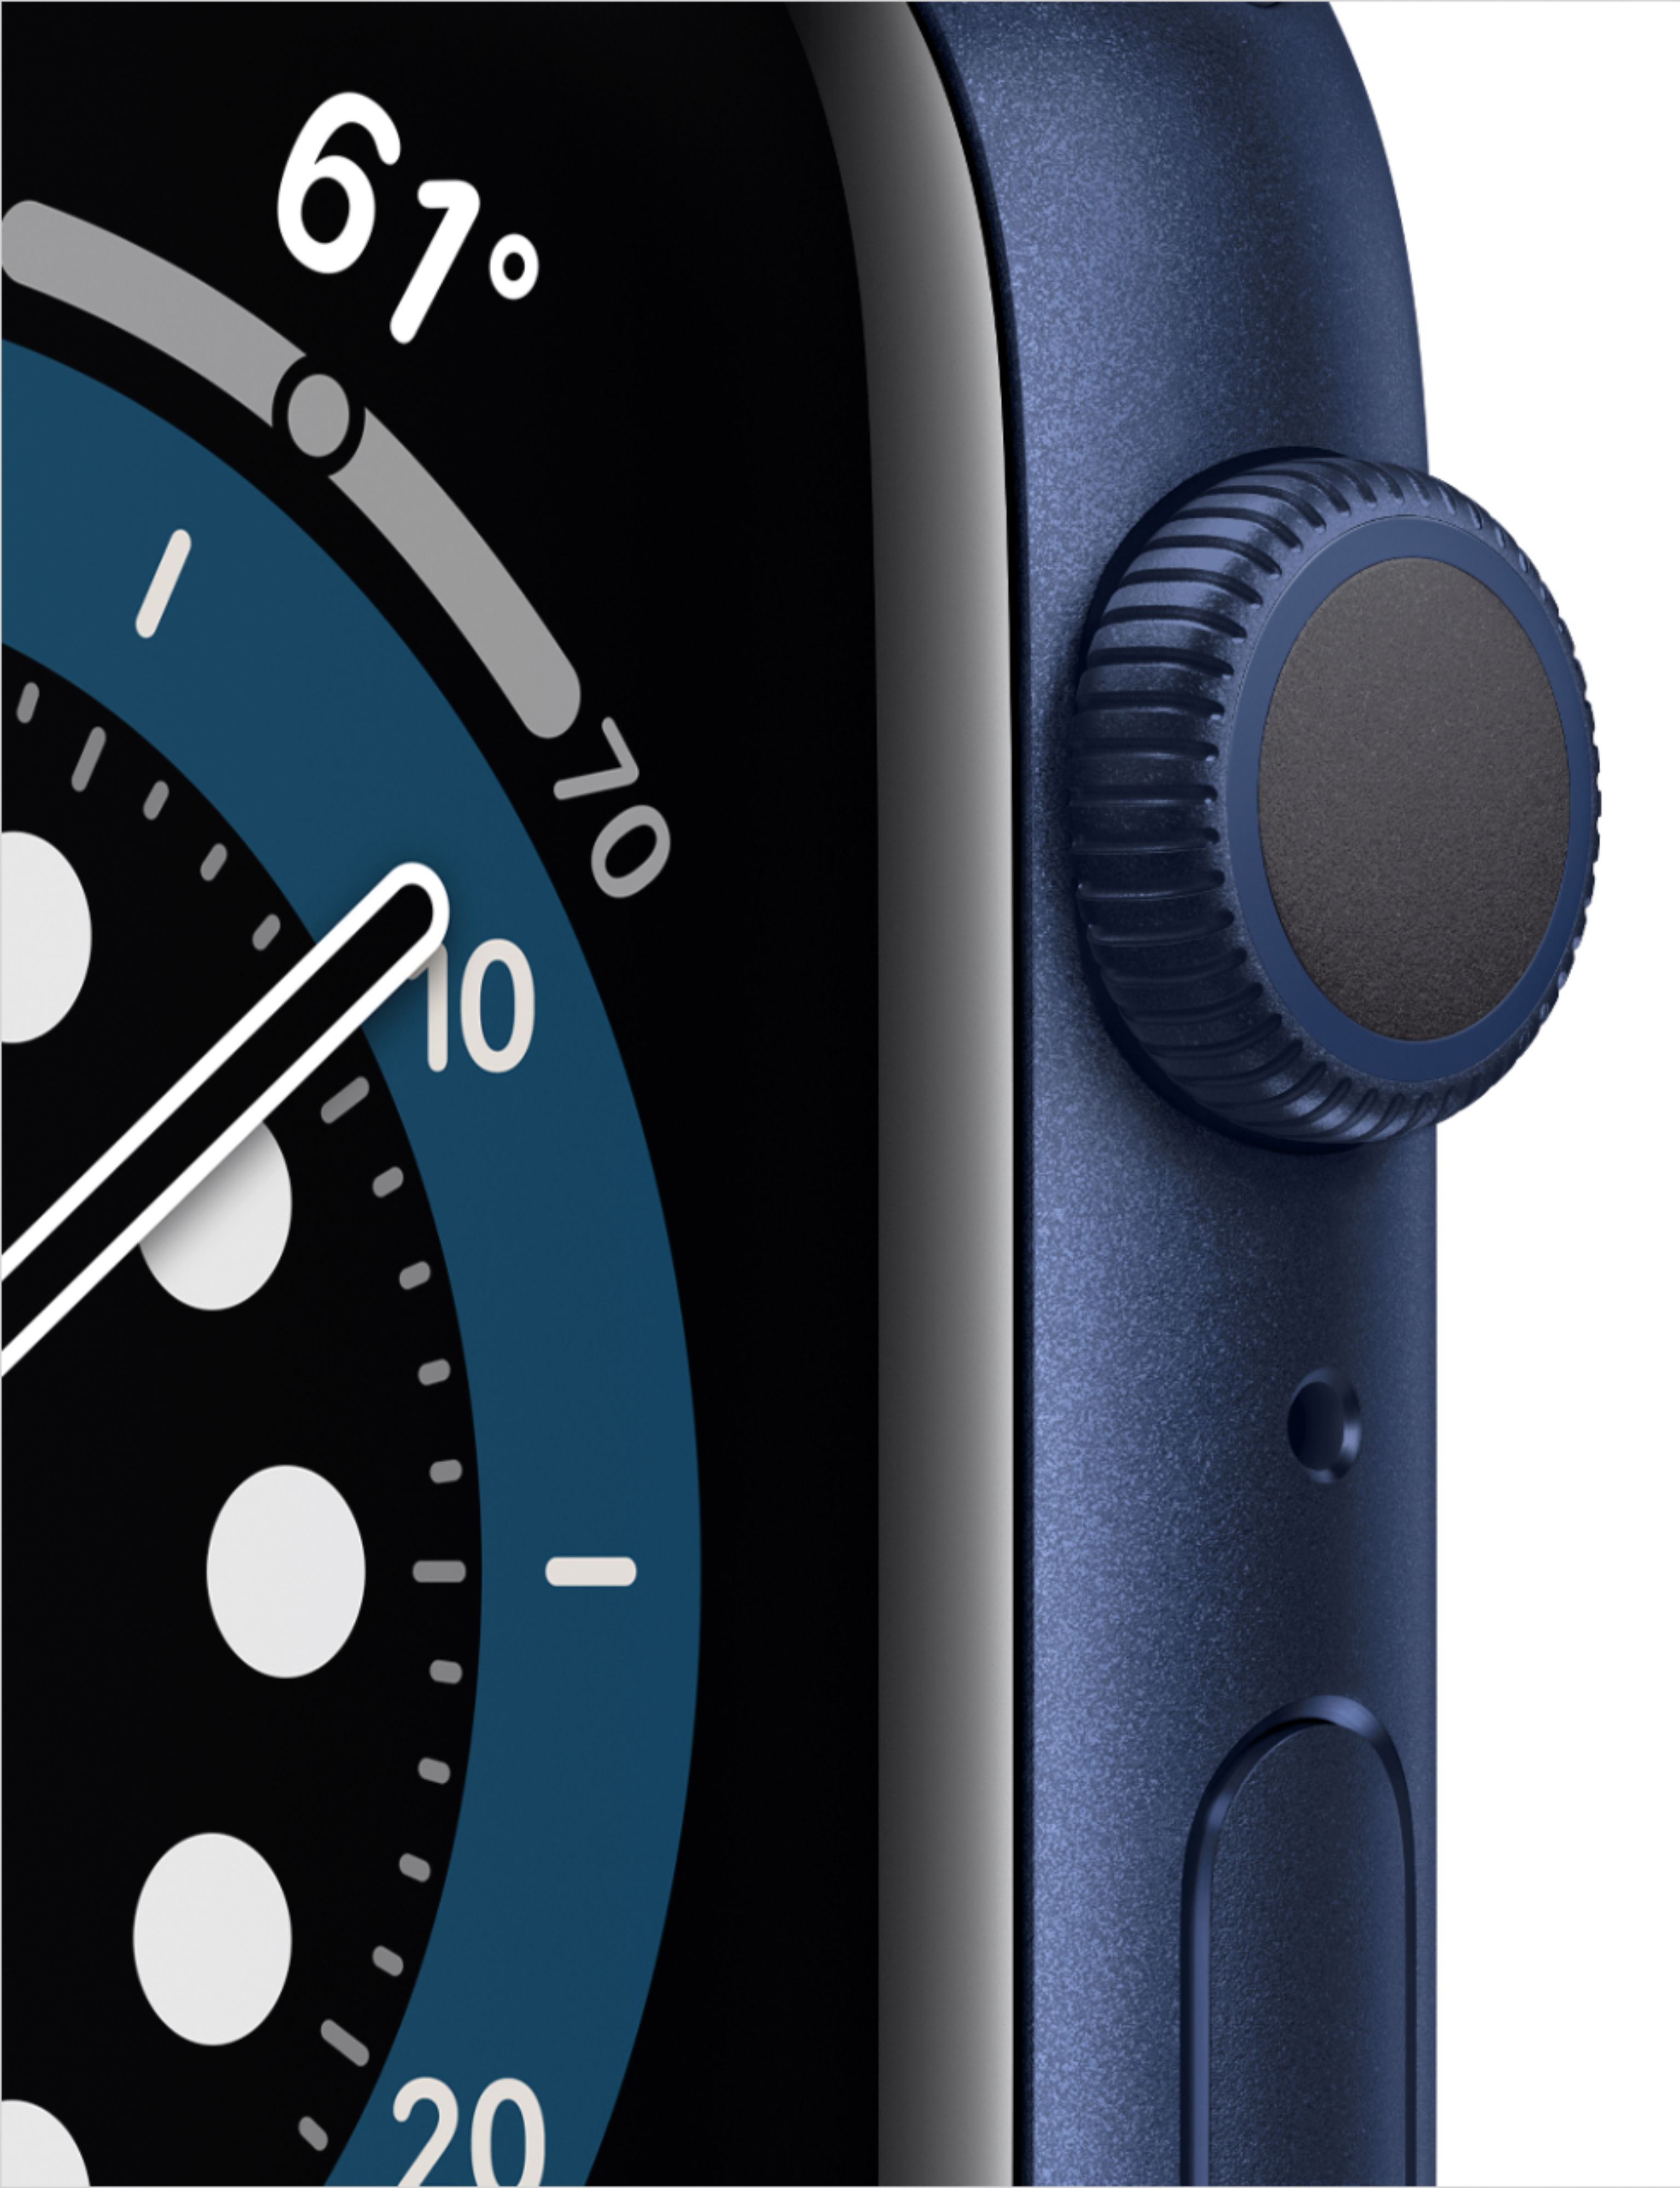 Apple(アップル) Apple Watch Series GPS 44mm ブルーアルミニウムケース  ディープネイビースポーツバンド〔258-ud〕 スマートウォッチ本体